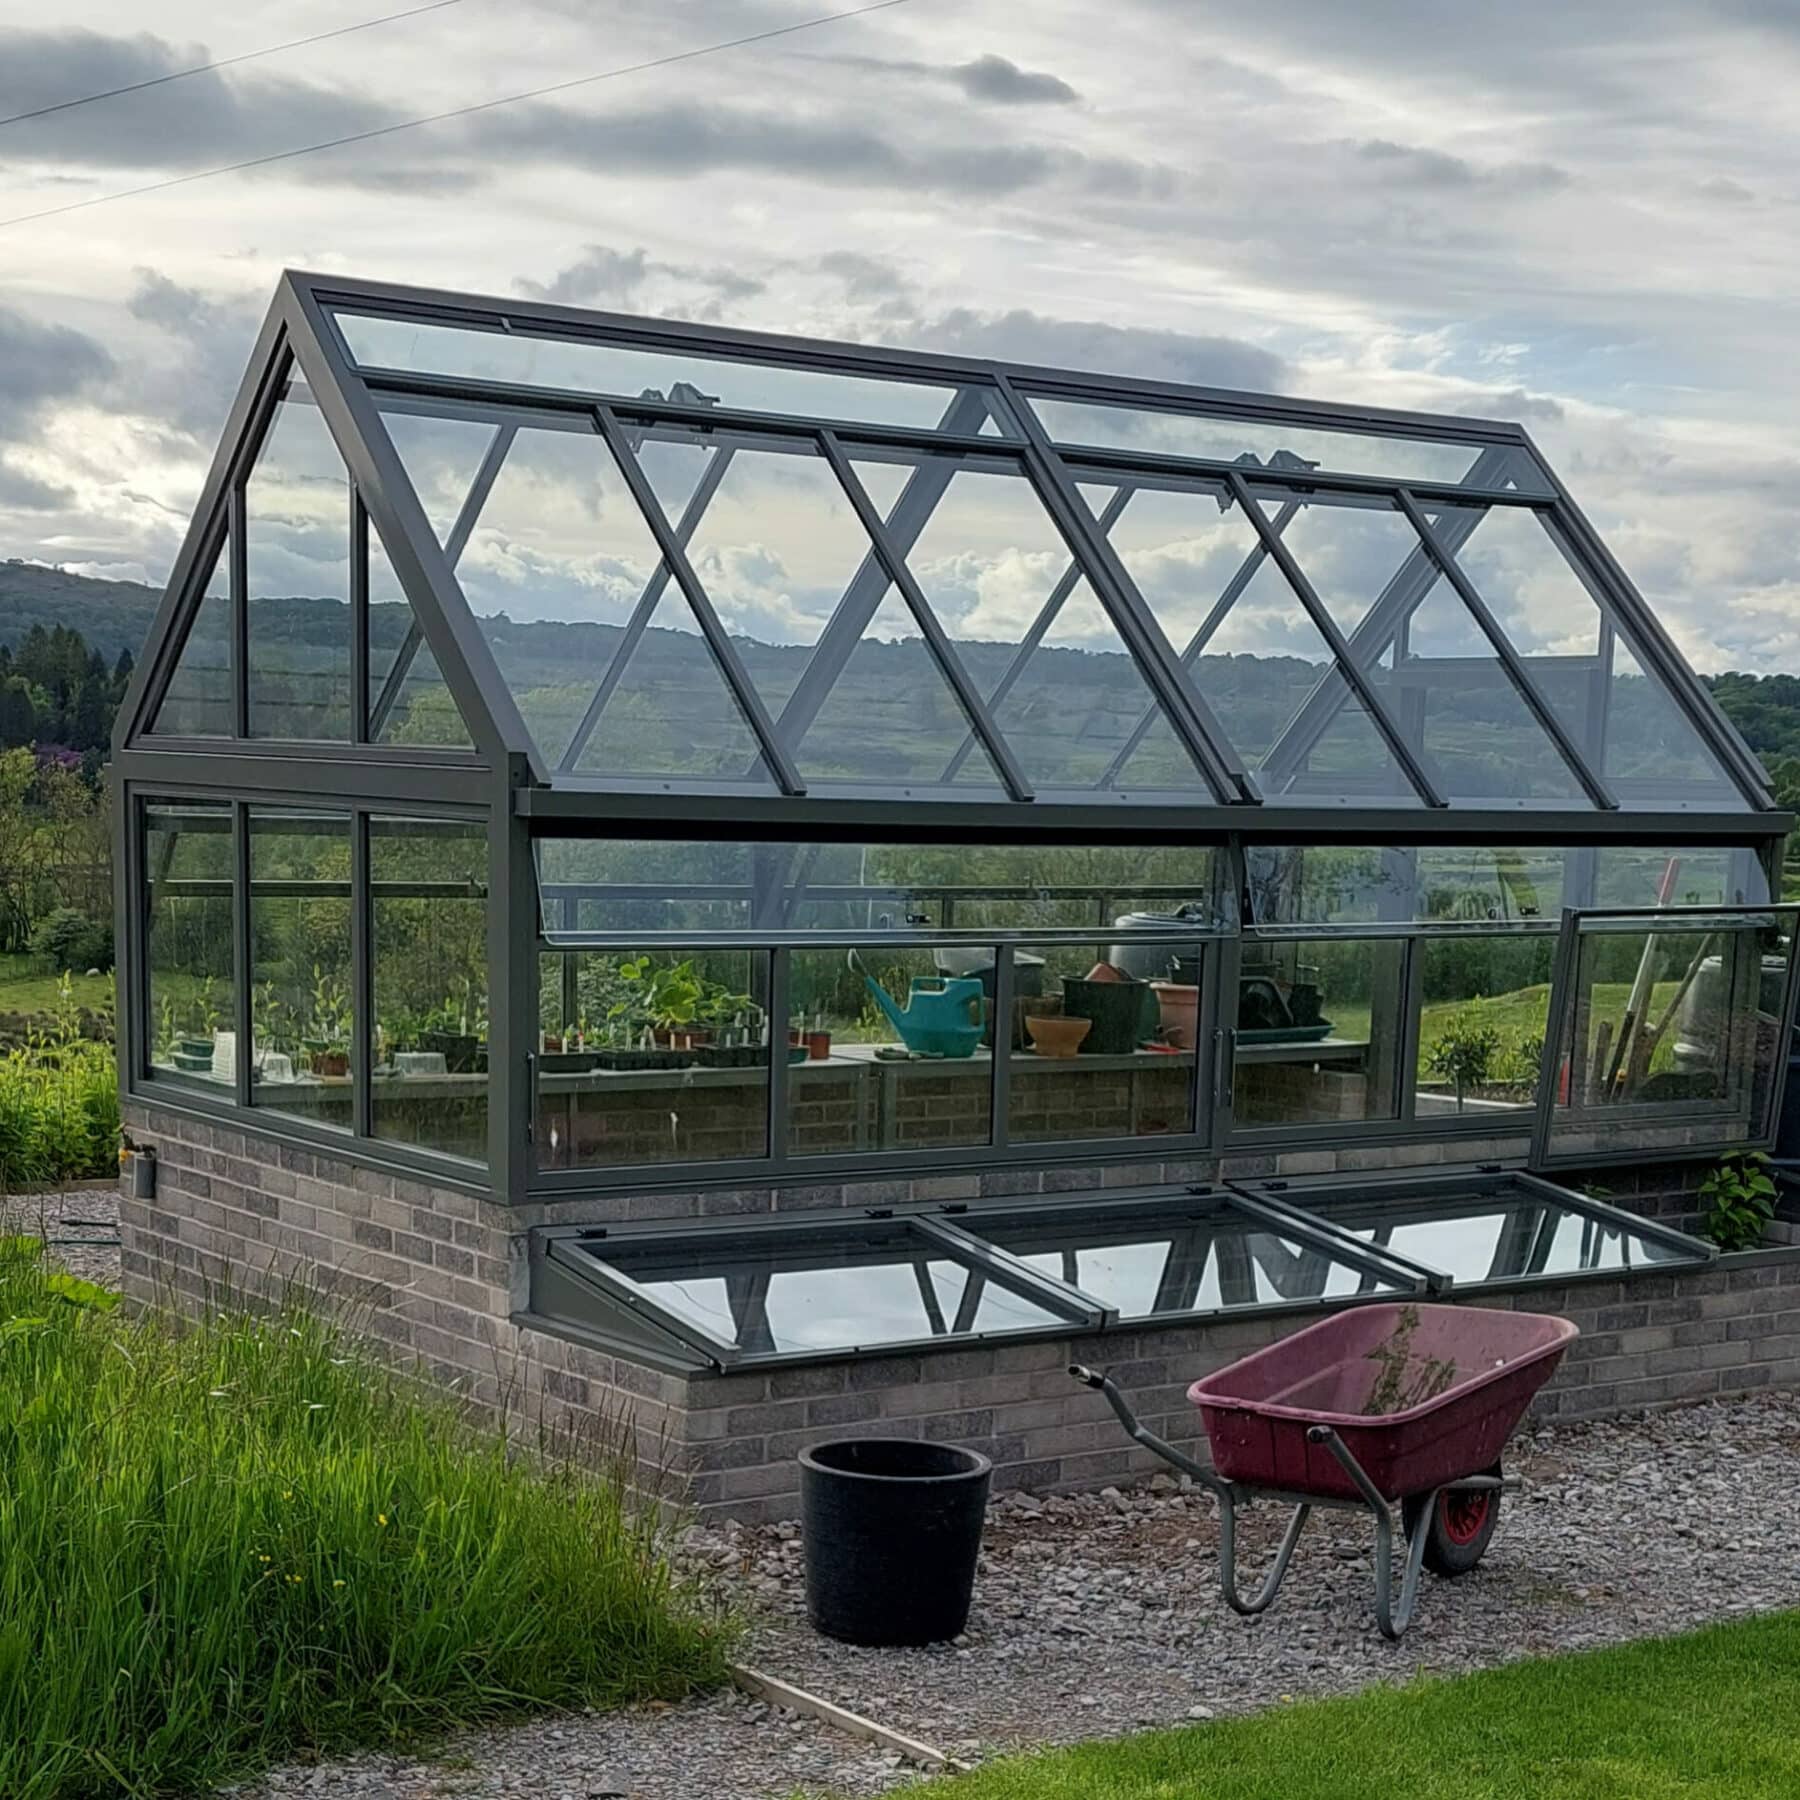 dwarf wall greenhouse